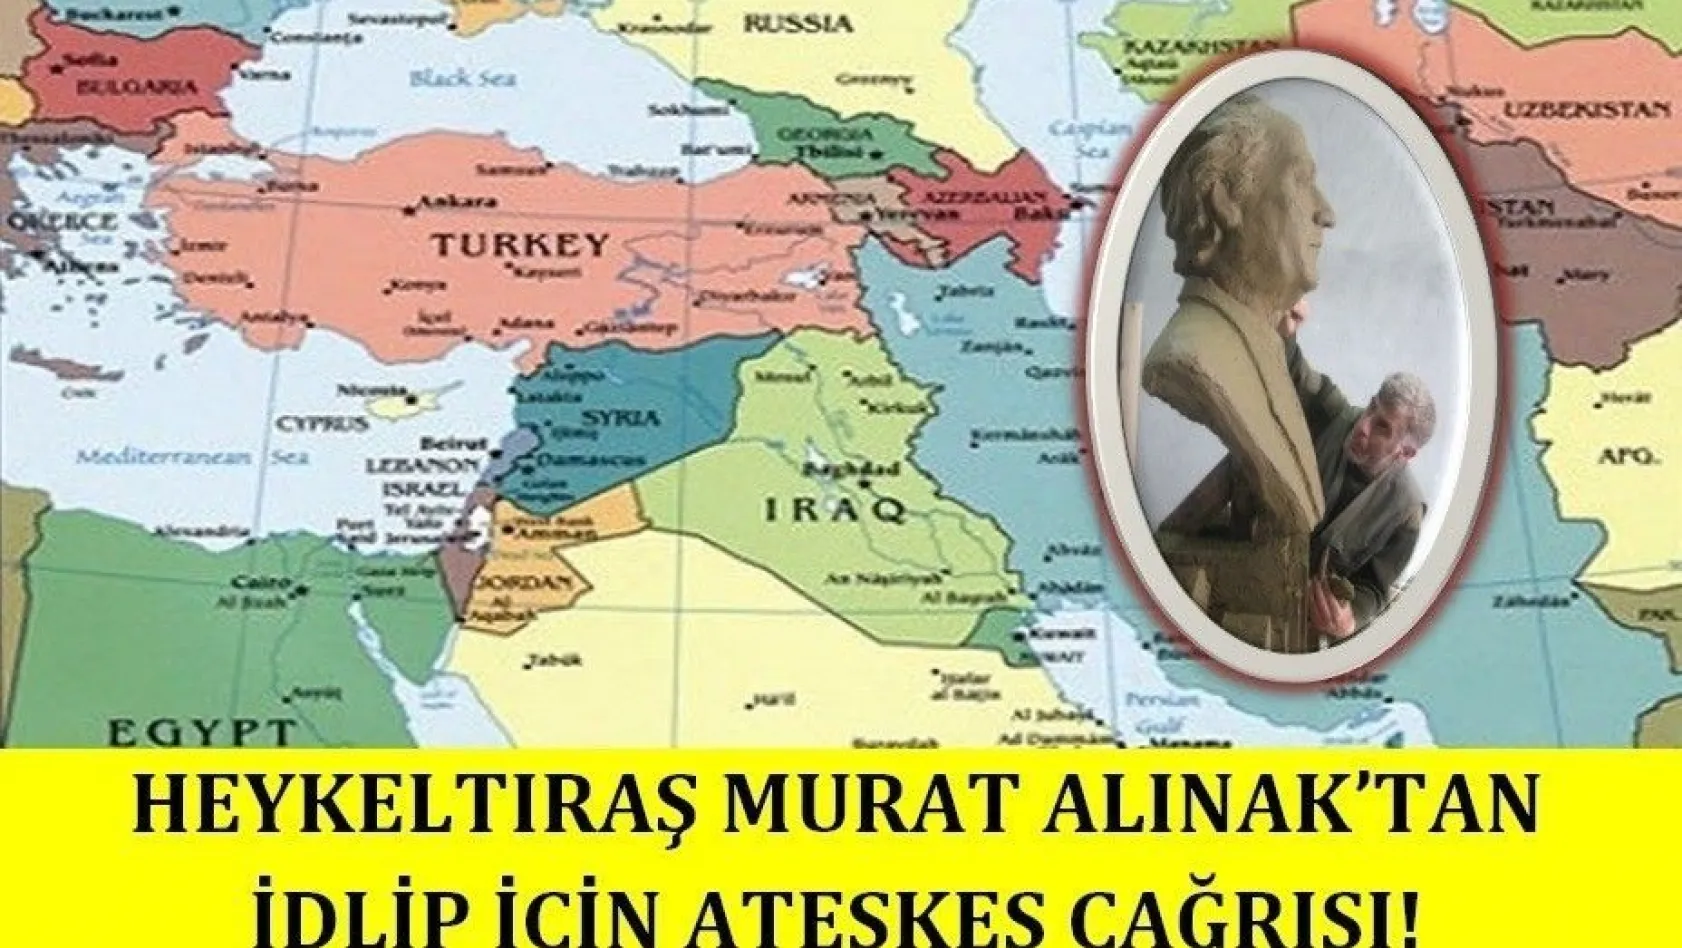 Heykeltıraş Murat Alınak'tan İdlip için ateşkes çağrısı!
